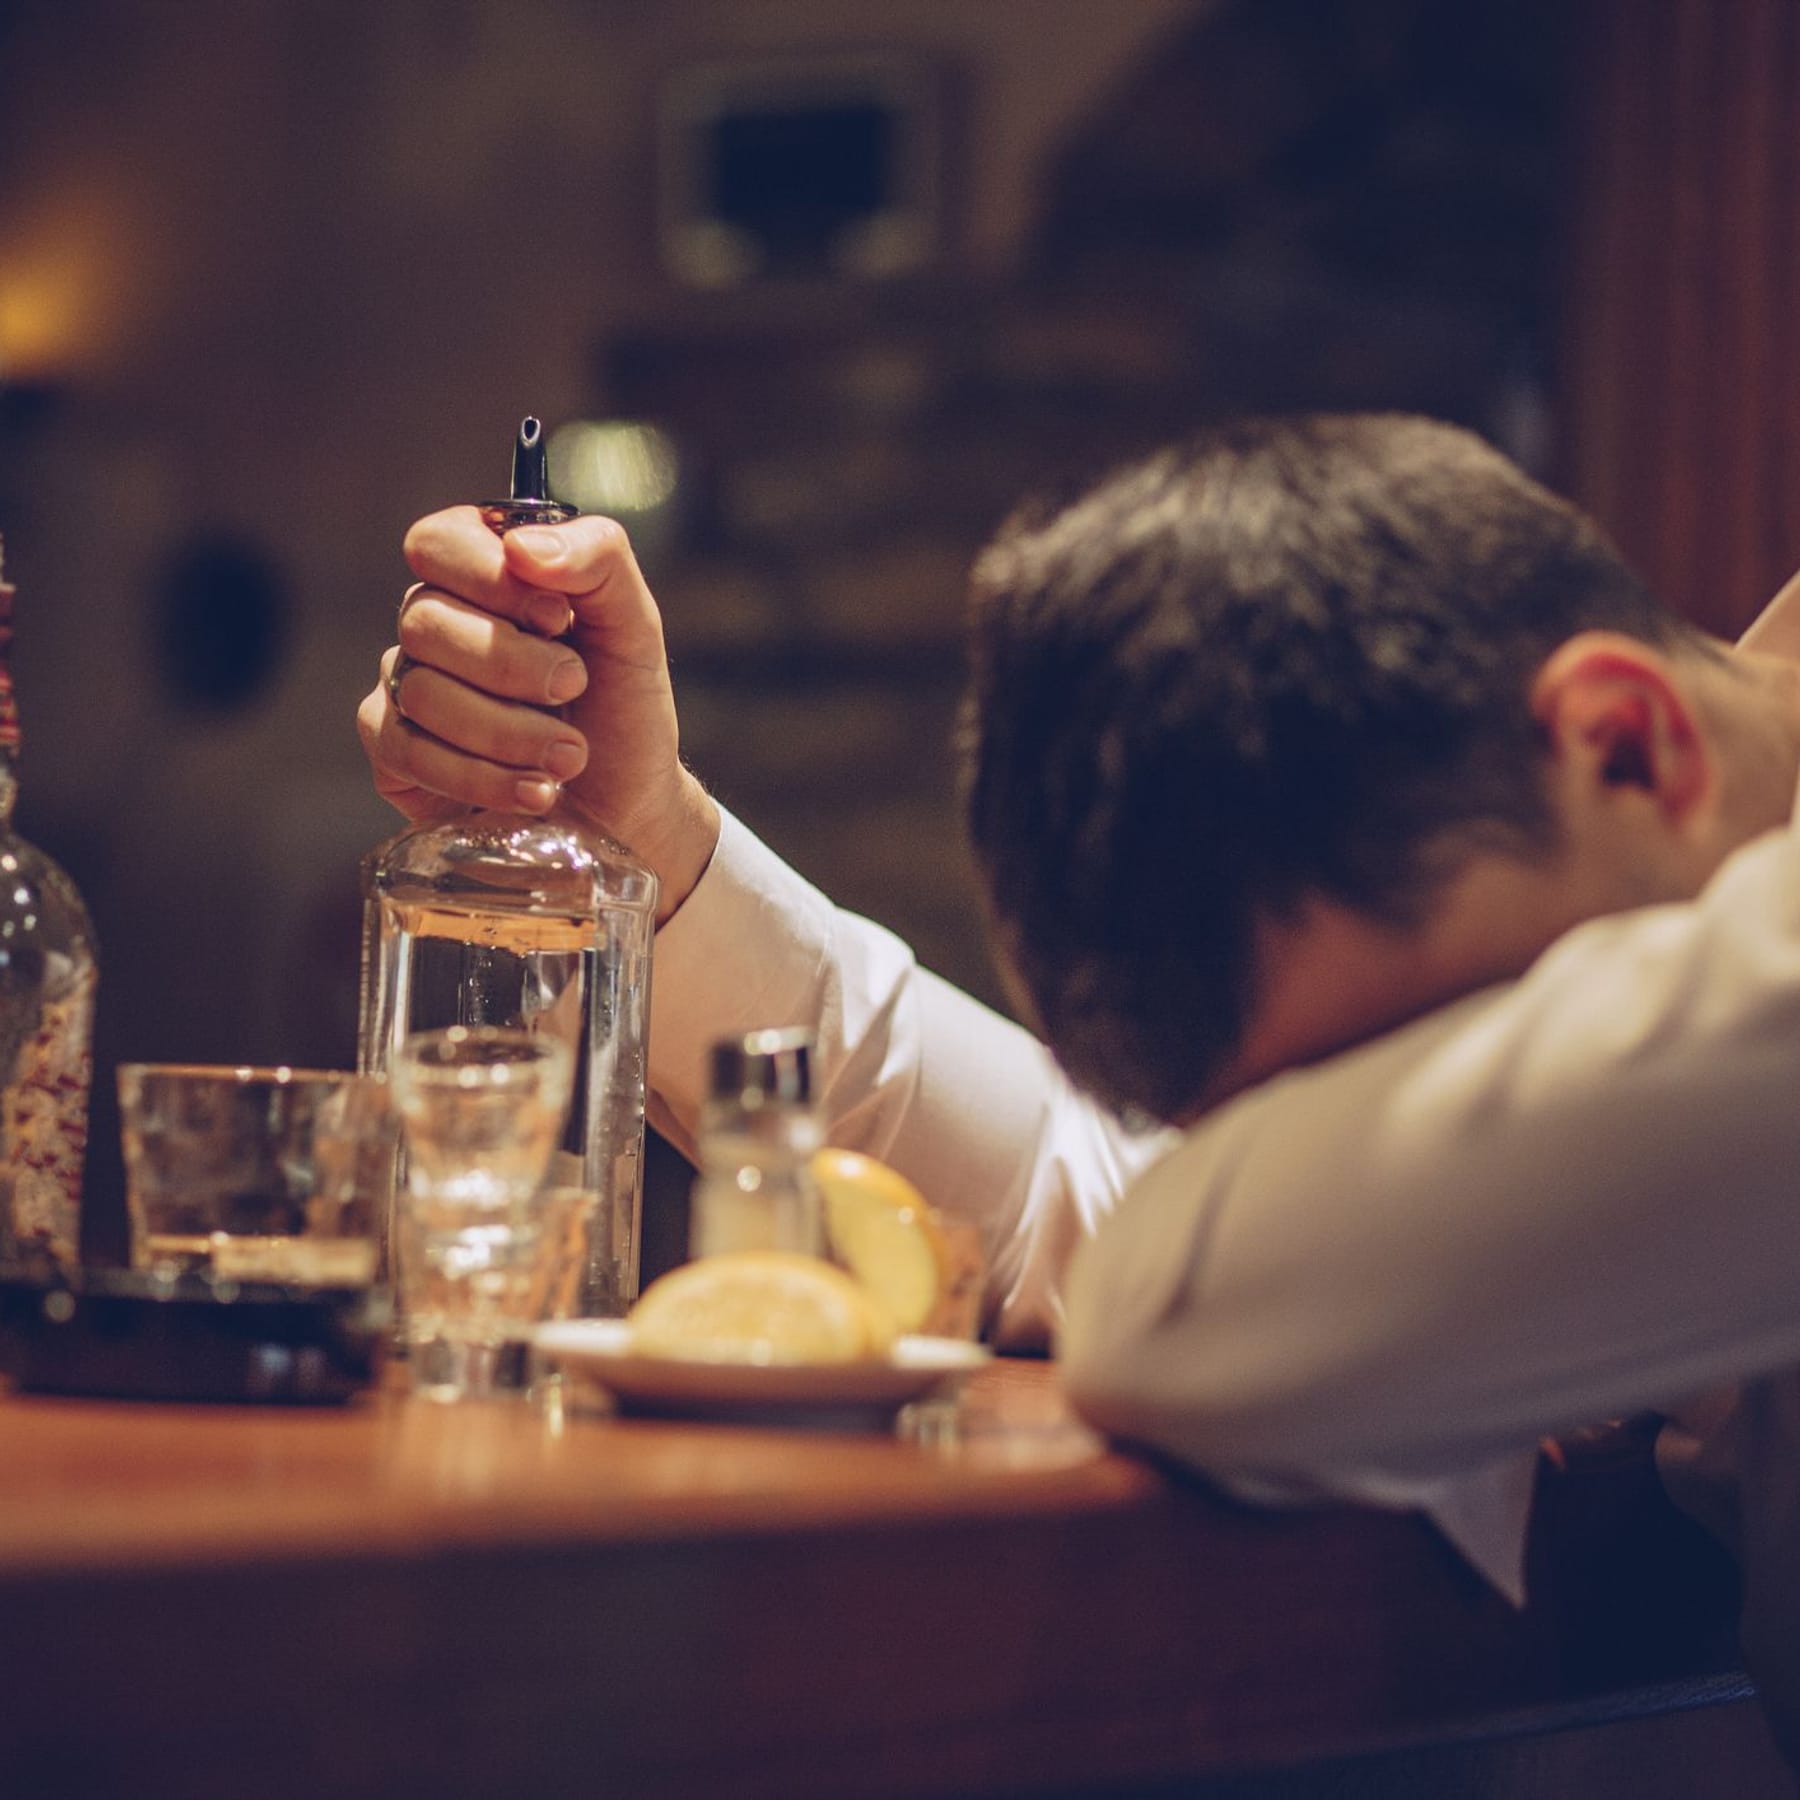 Alkoholkonsum: So gefährlich ist ein Filmriss fürs Gehirn